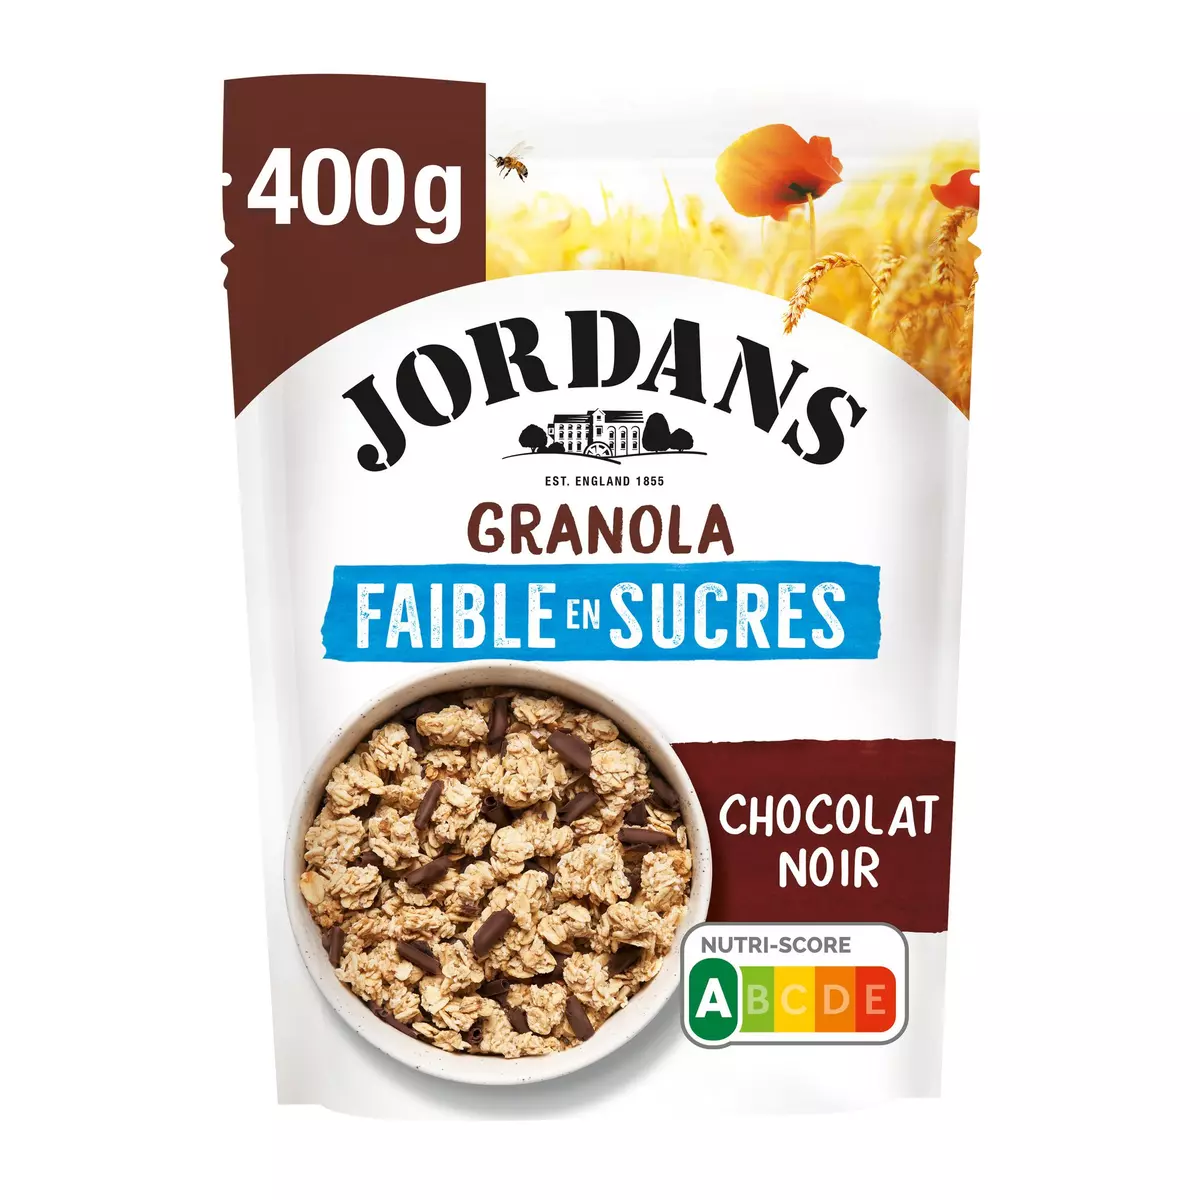 Granola faible en sucre - Jordans - 400g